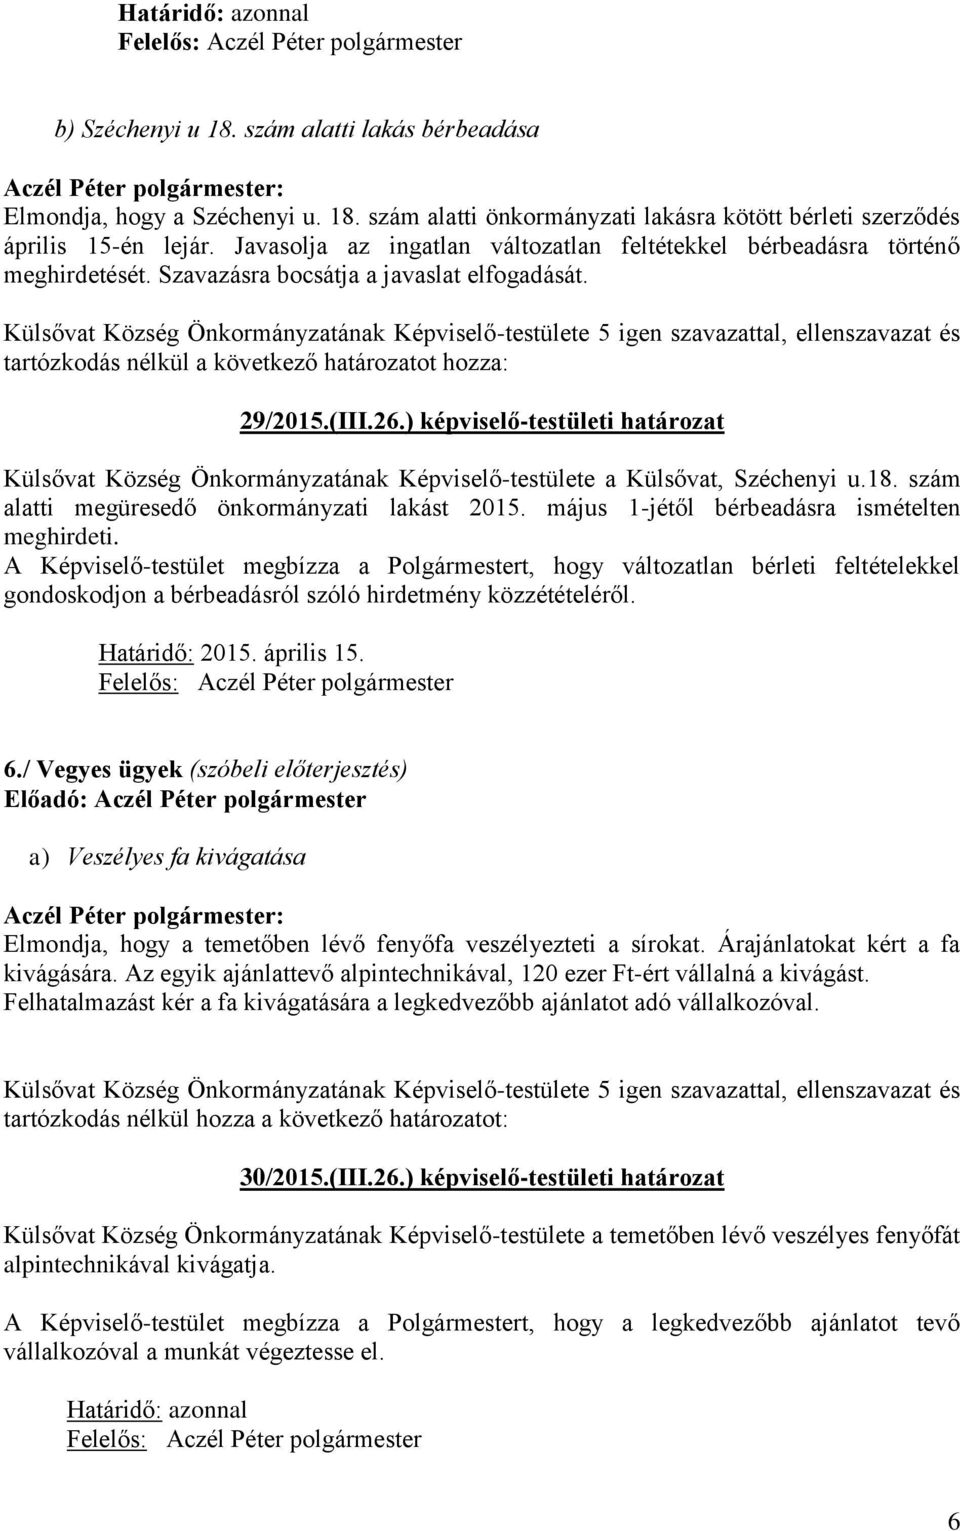 ) képviselő-testületi határozat Külsővat Község Önkormányzatának Képviselő-testülete a Külsővat, Széchenyi u.18. szám alatti megüresedő önkormányzati lakást 2015.